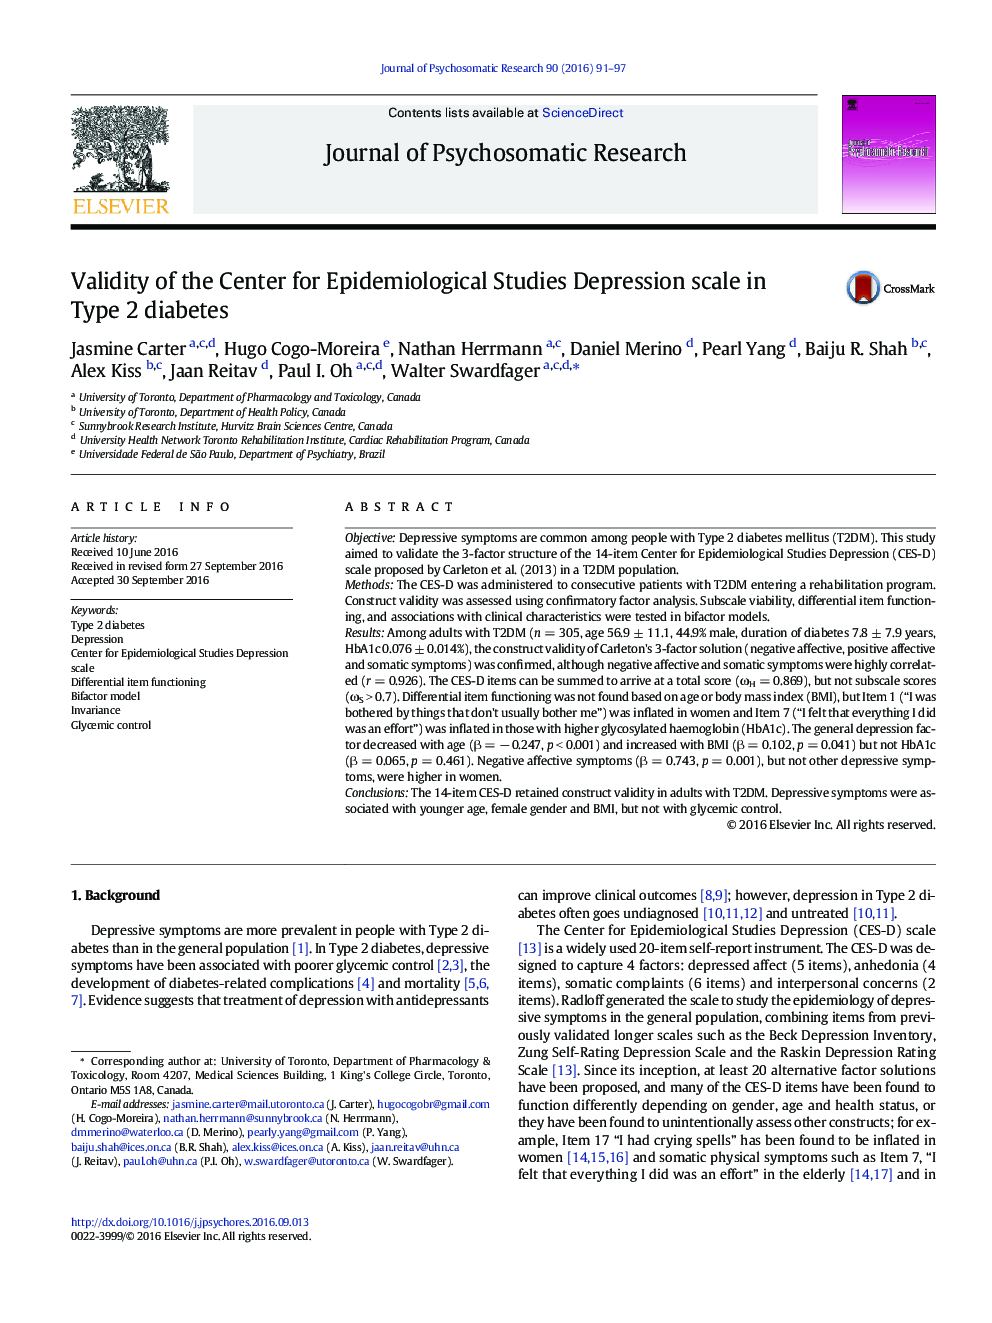 اعتبار مرکز مطالعات اپیدمیولوژیک در مقیاس افسردگی در دیابت نوع 2 